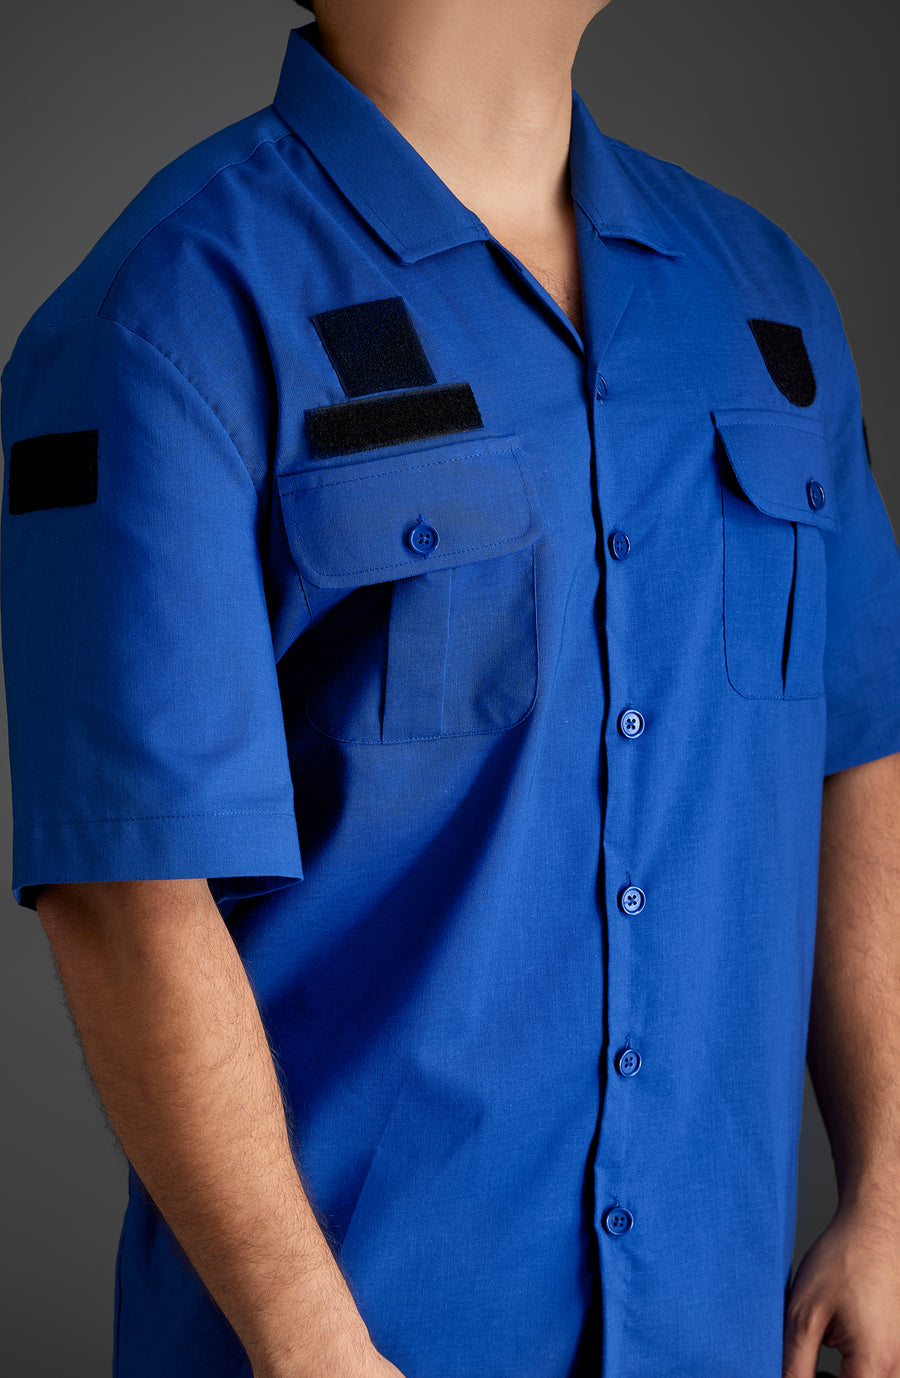 Blue Shirt Designed for Gendarmerie and Coast Guards